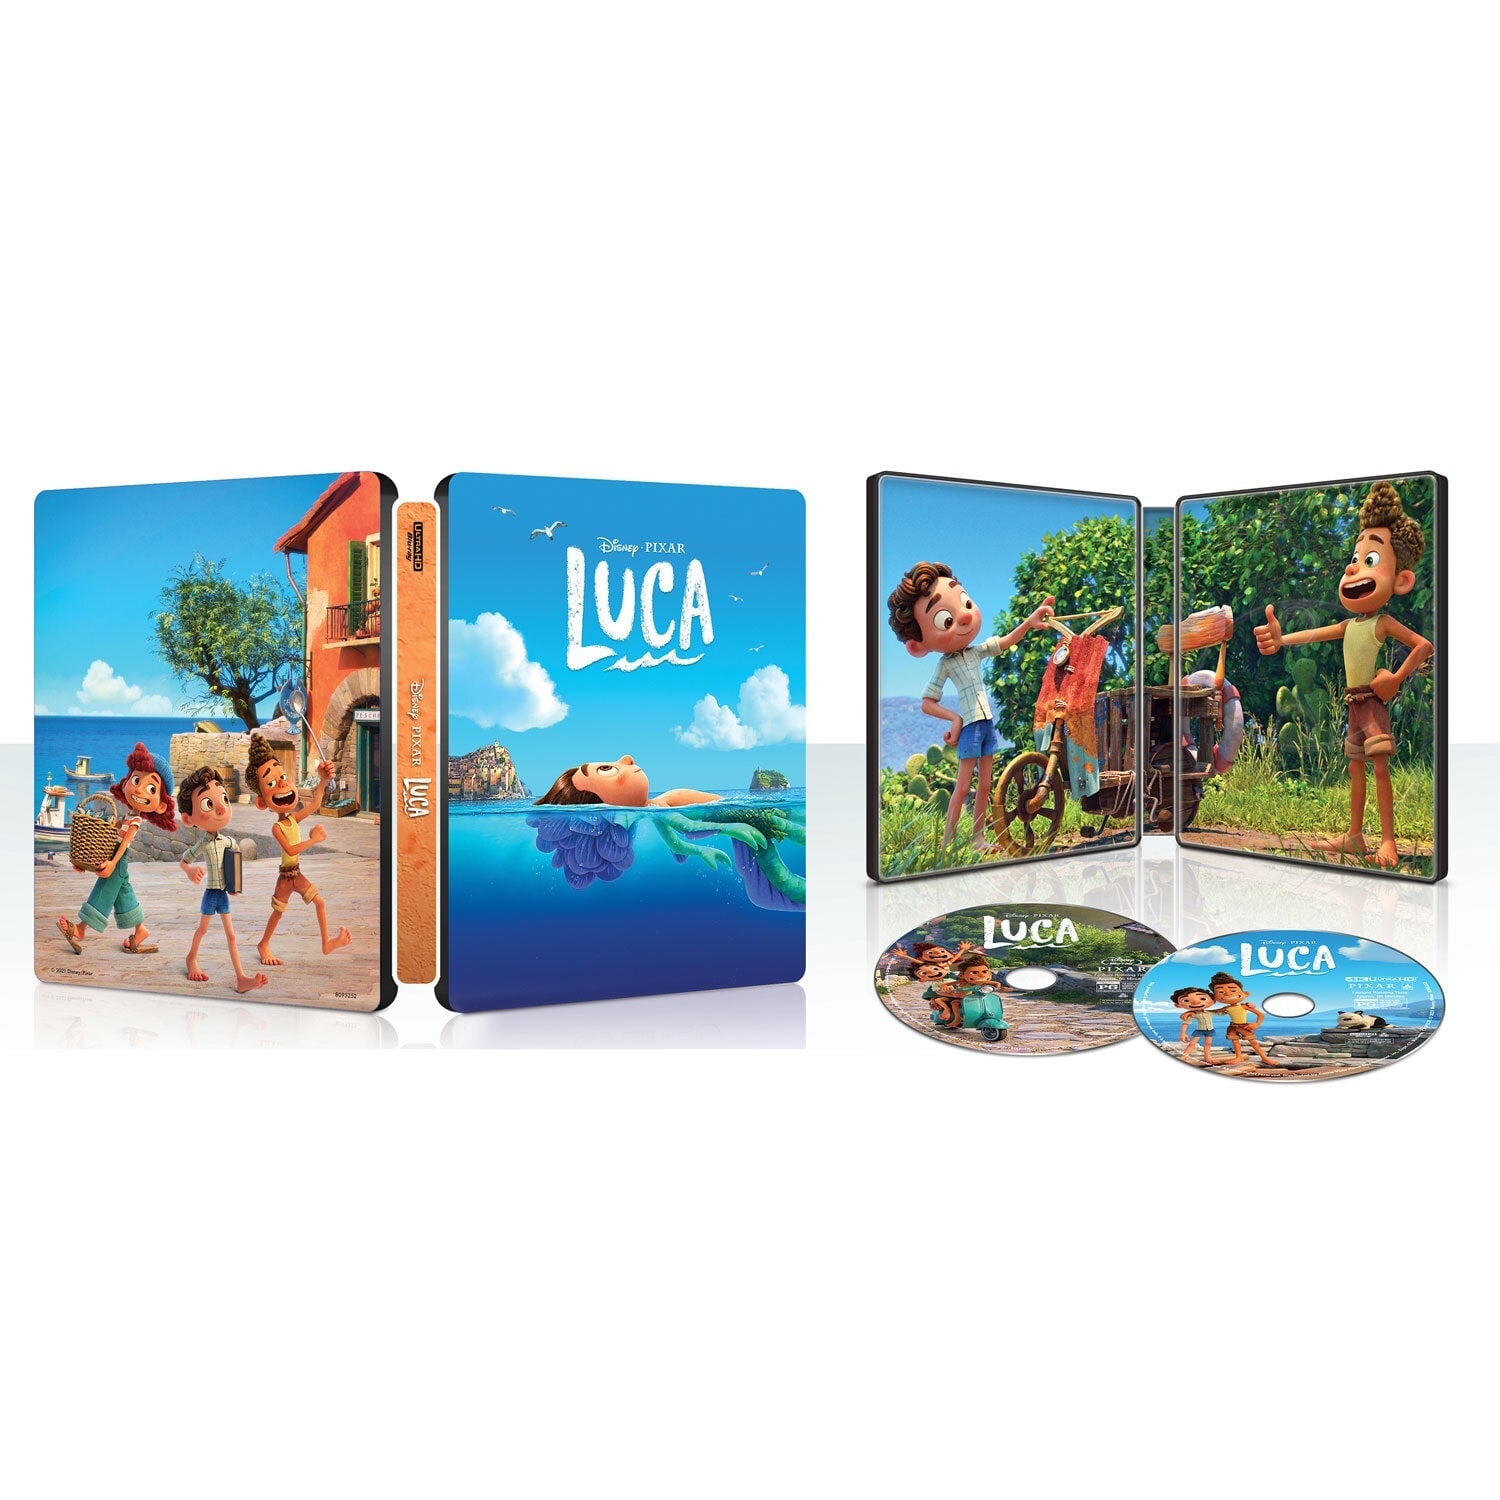 Лука (2021) (англ. язык) (4K UHD + Blu-ray) Steelbook